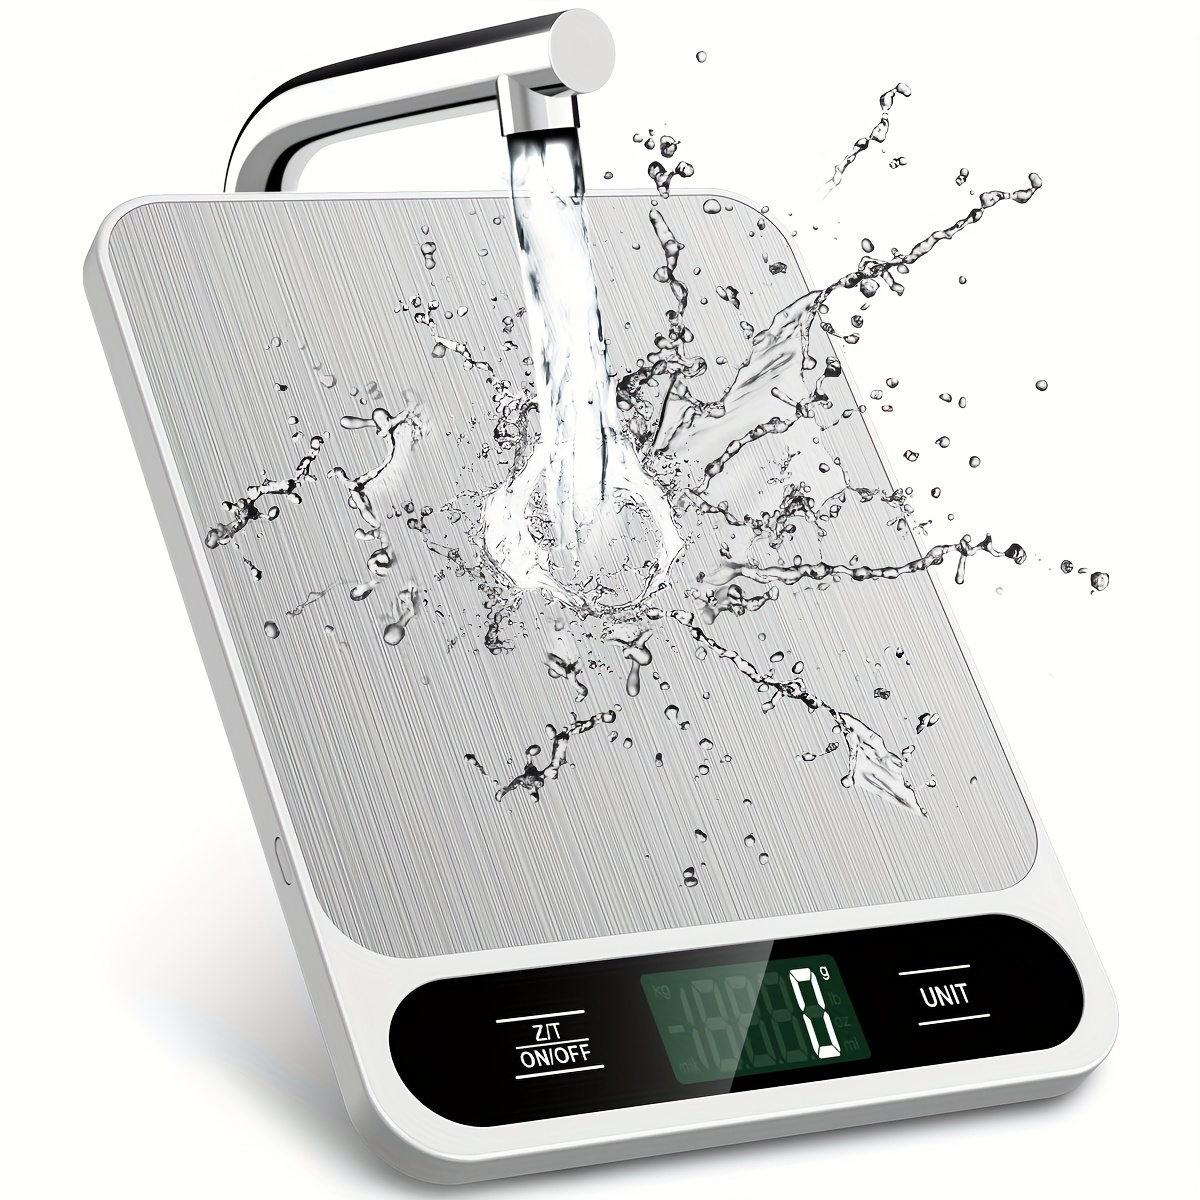 Báscula digital inteligente de alimentos para pérdida de peso, báscula de  alimentos de cocina gramos y onzas con calculadora nutricional, báscula de